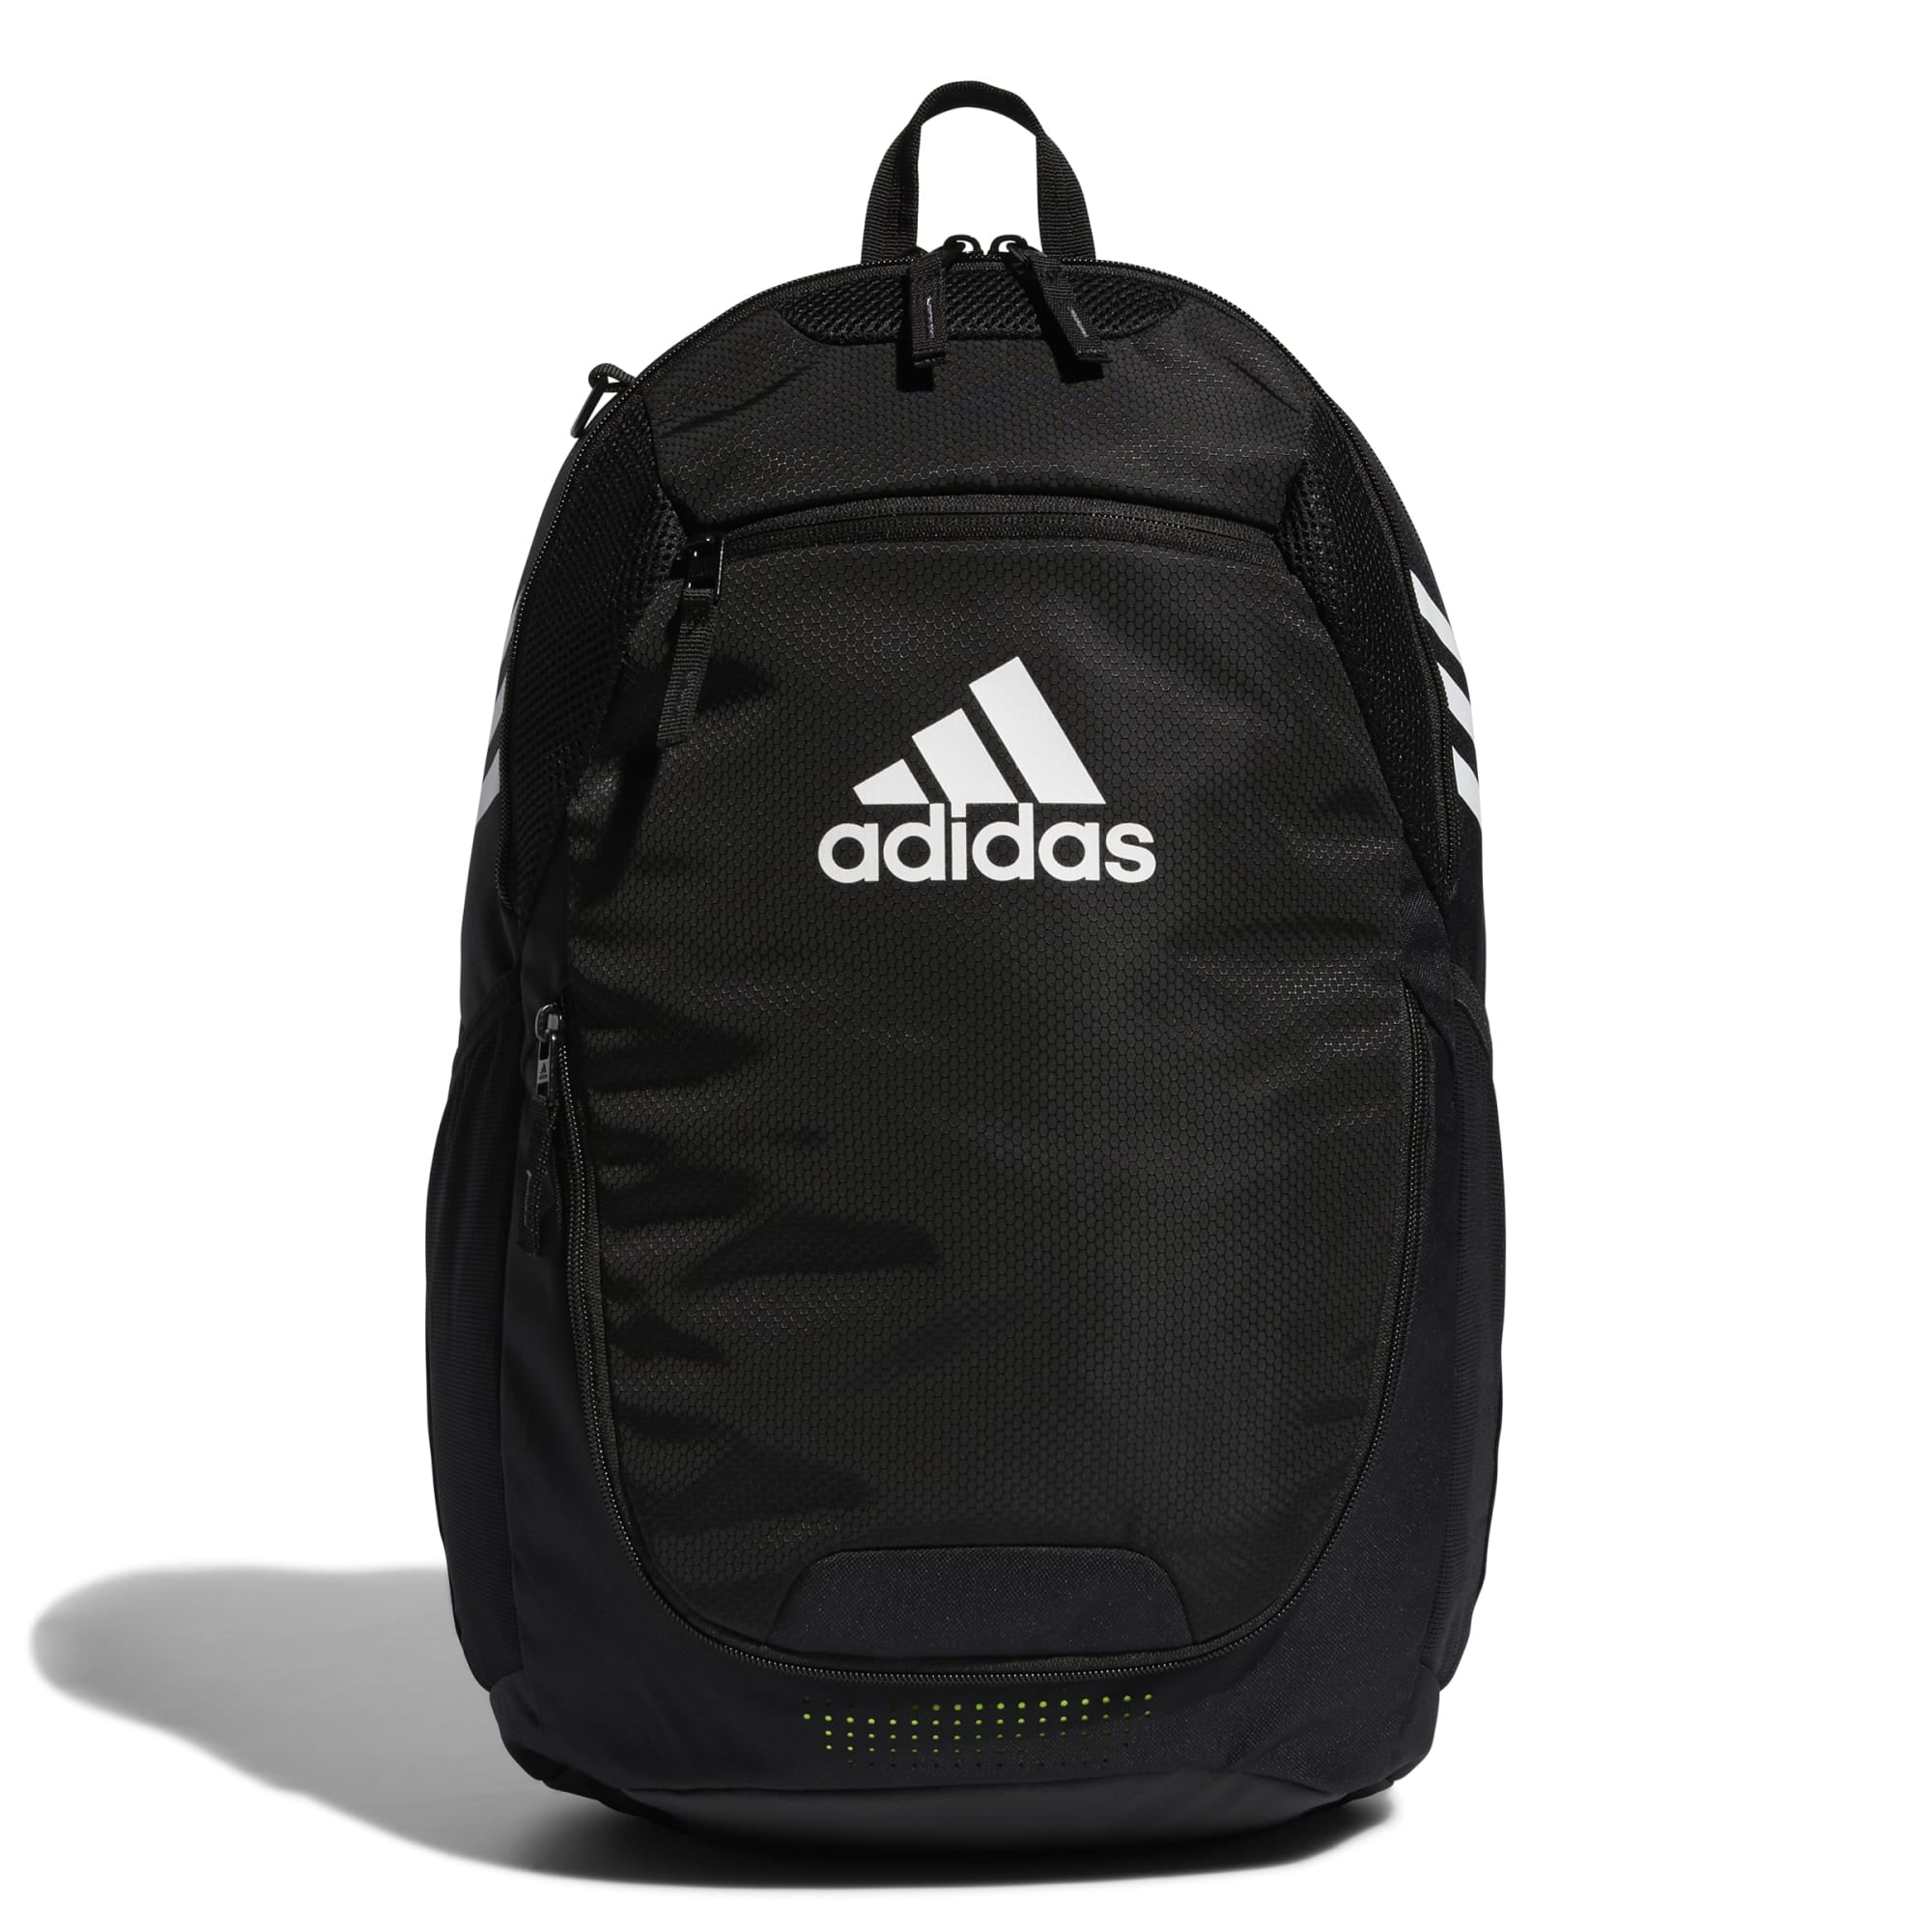 Adidas Stadium 3 Backpack Black - FZ6789